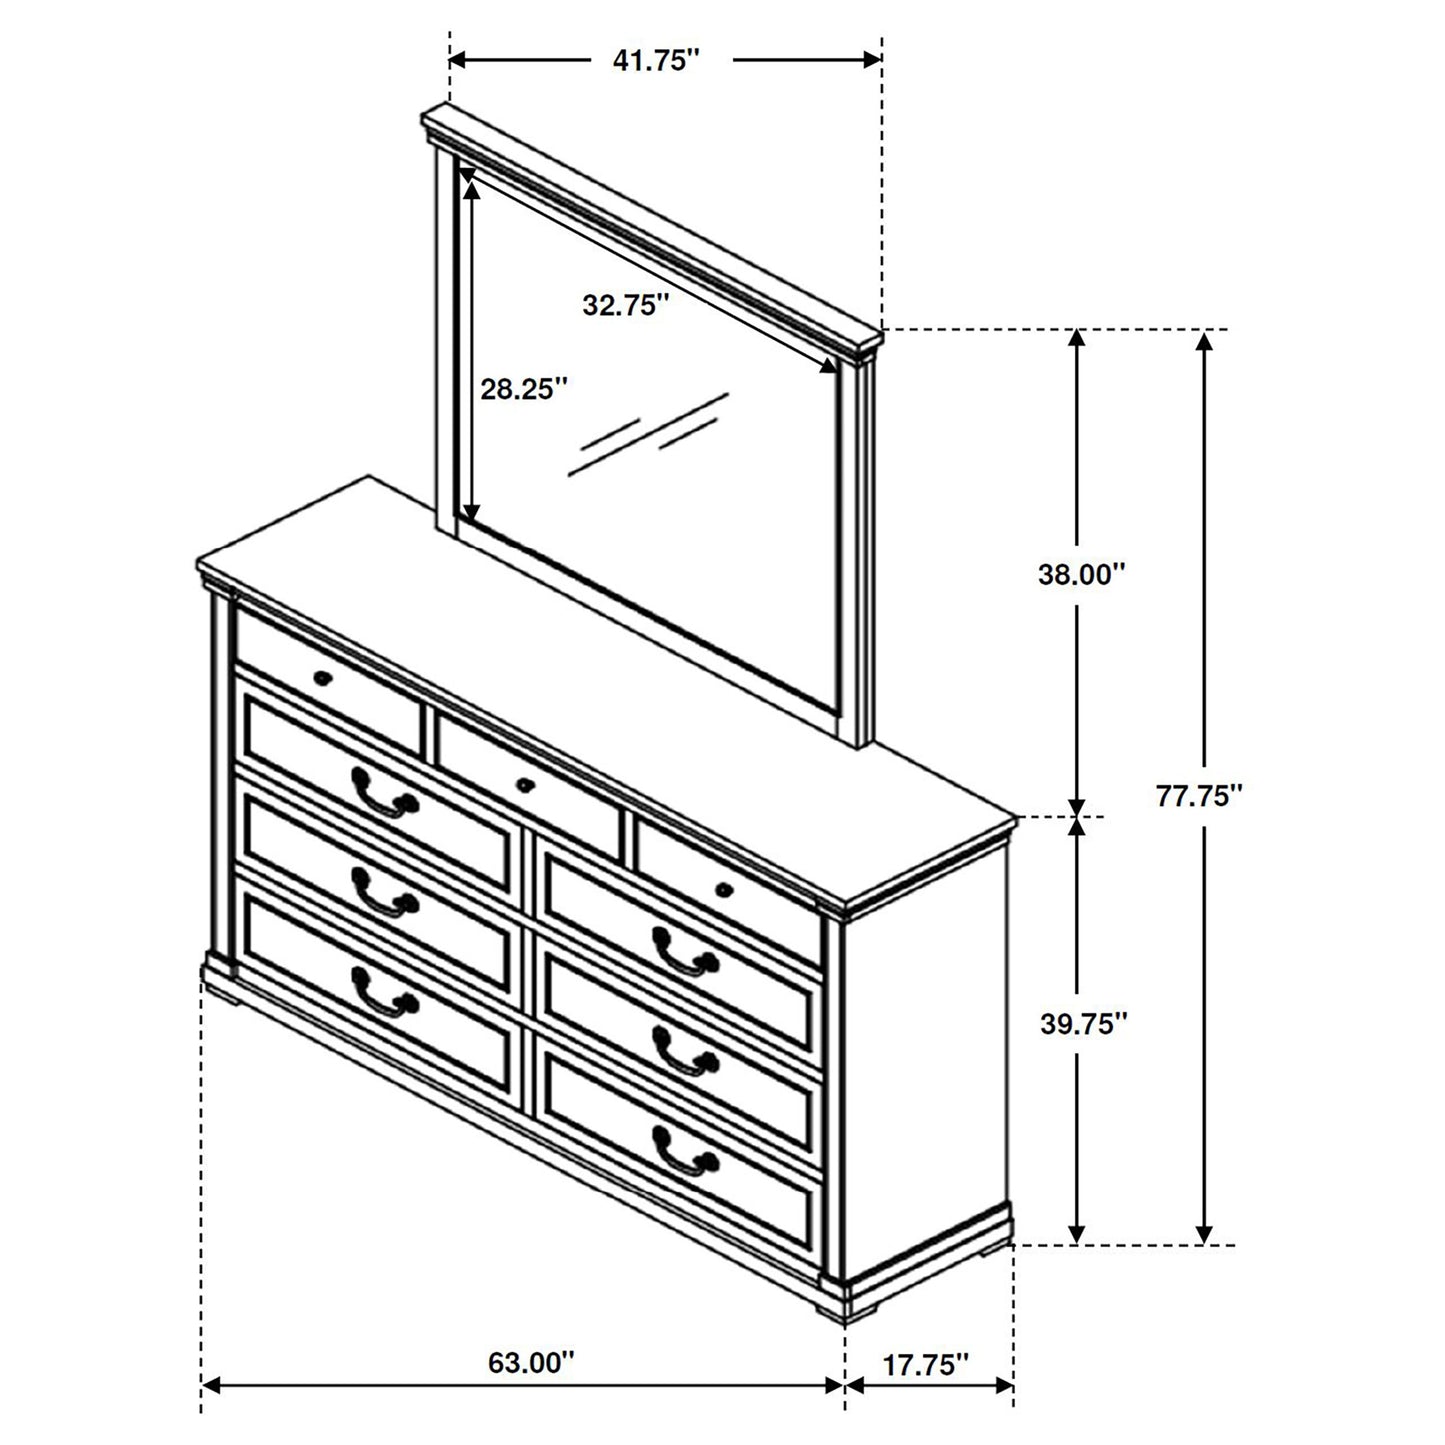 Hillcrest 9-drawer Dresser with Mirror Dark Rum and White